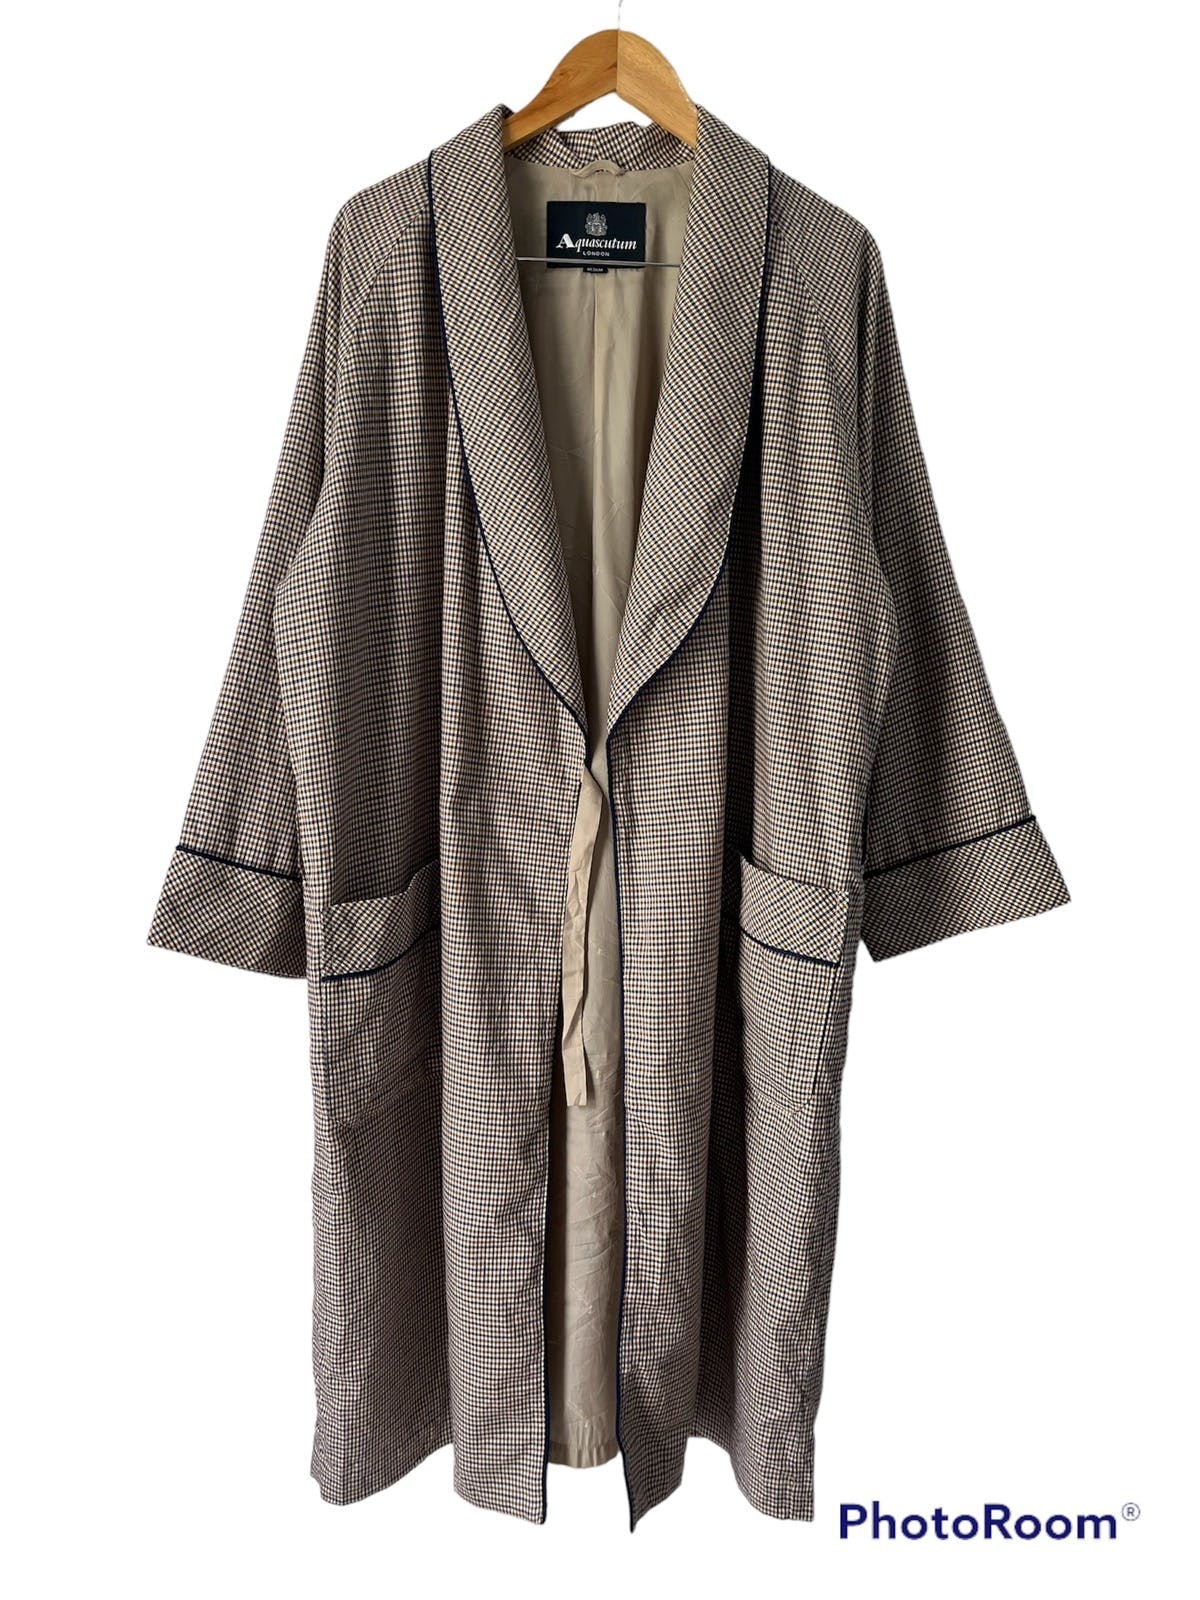 Vintage - Aquascutum Bath Robe / Nightwear Long Robe - 1